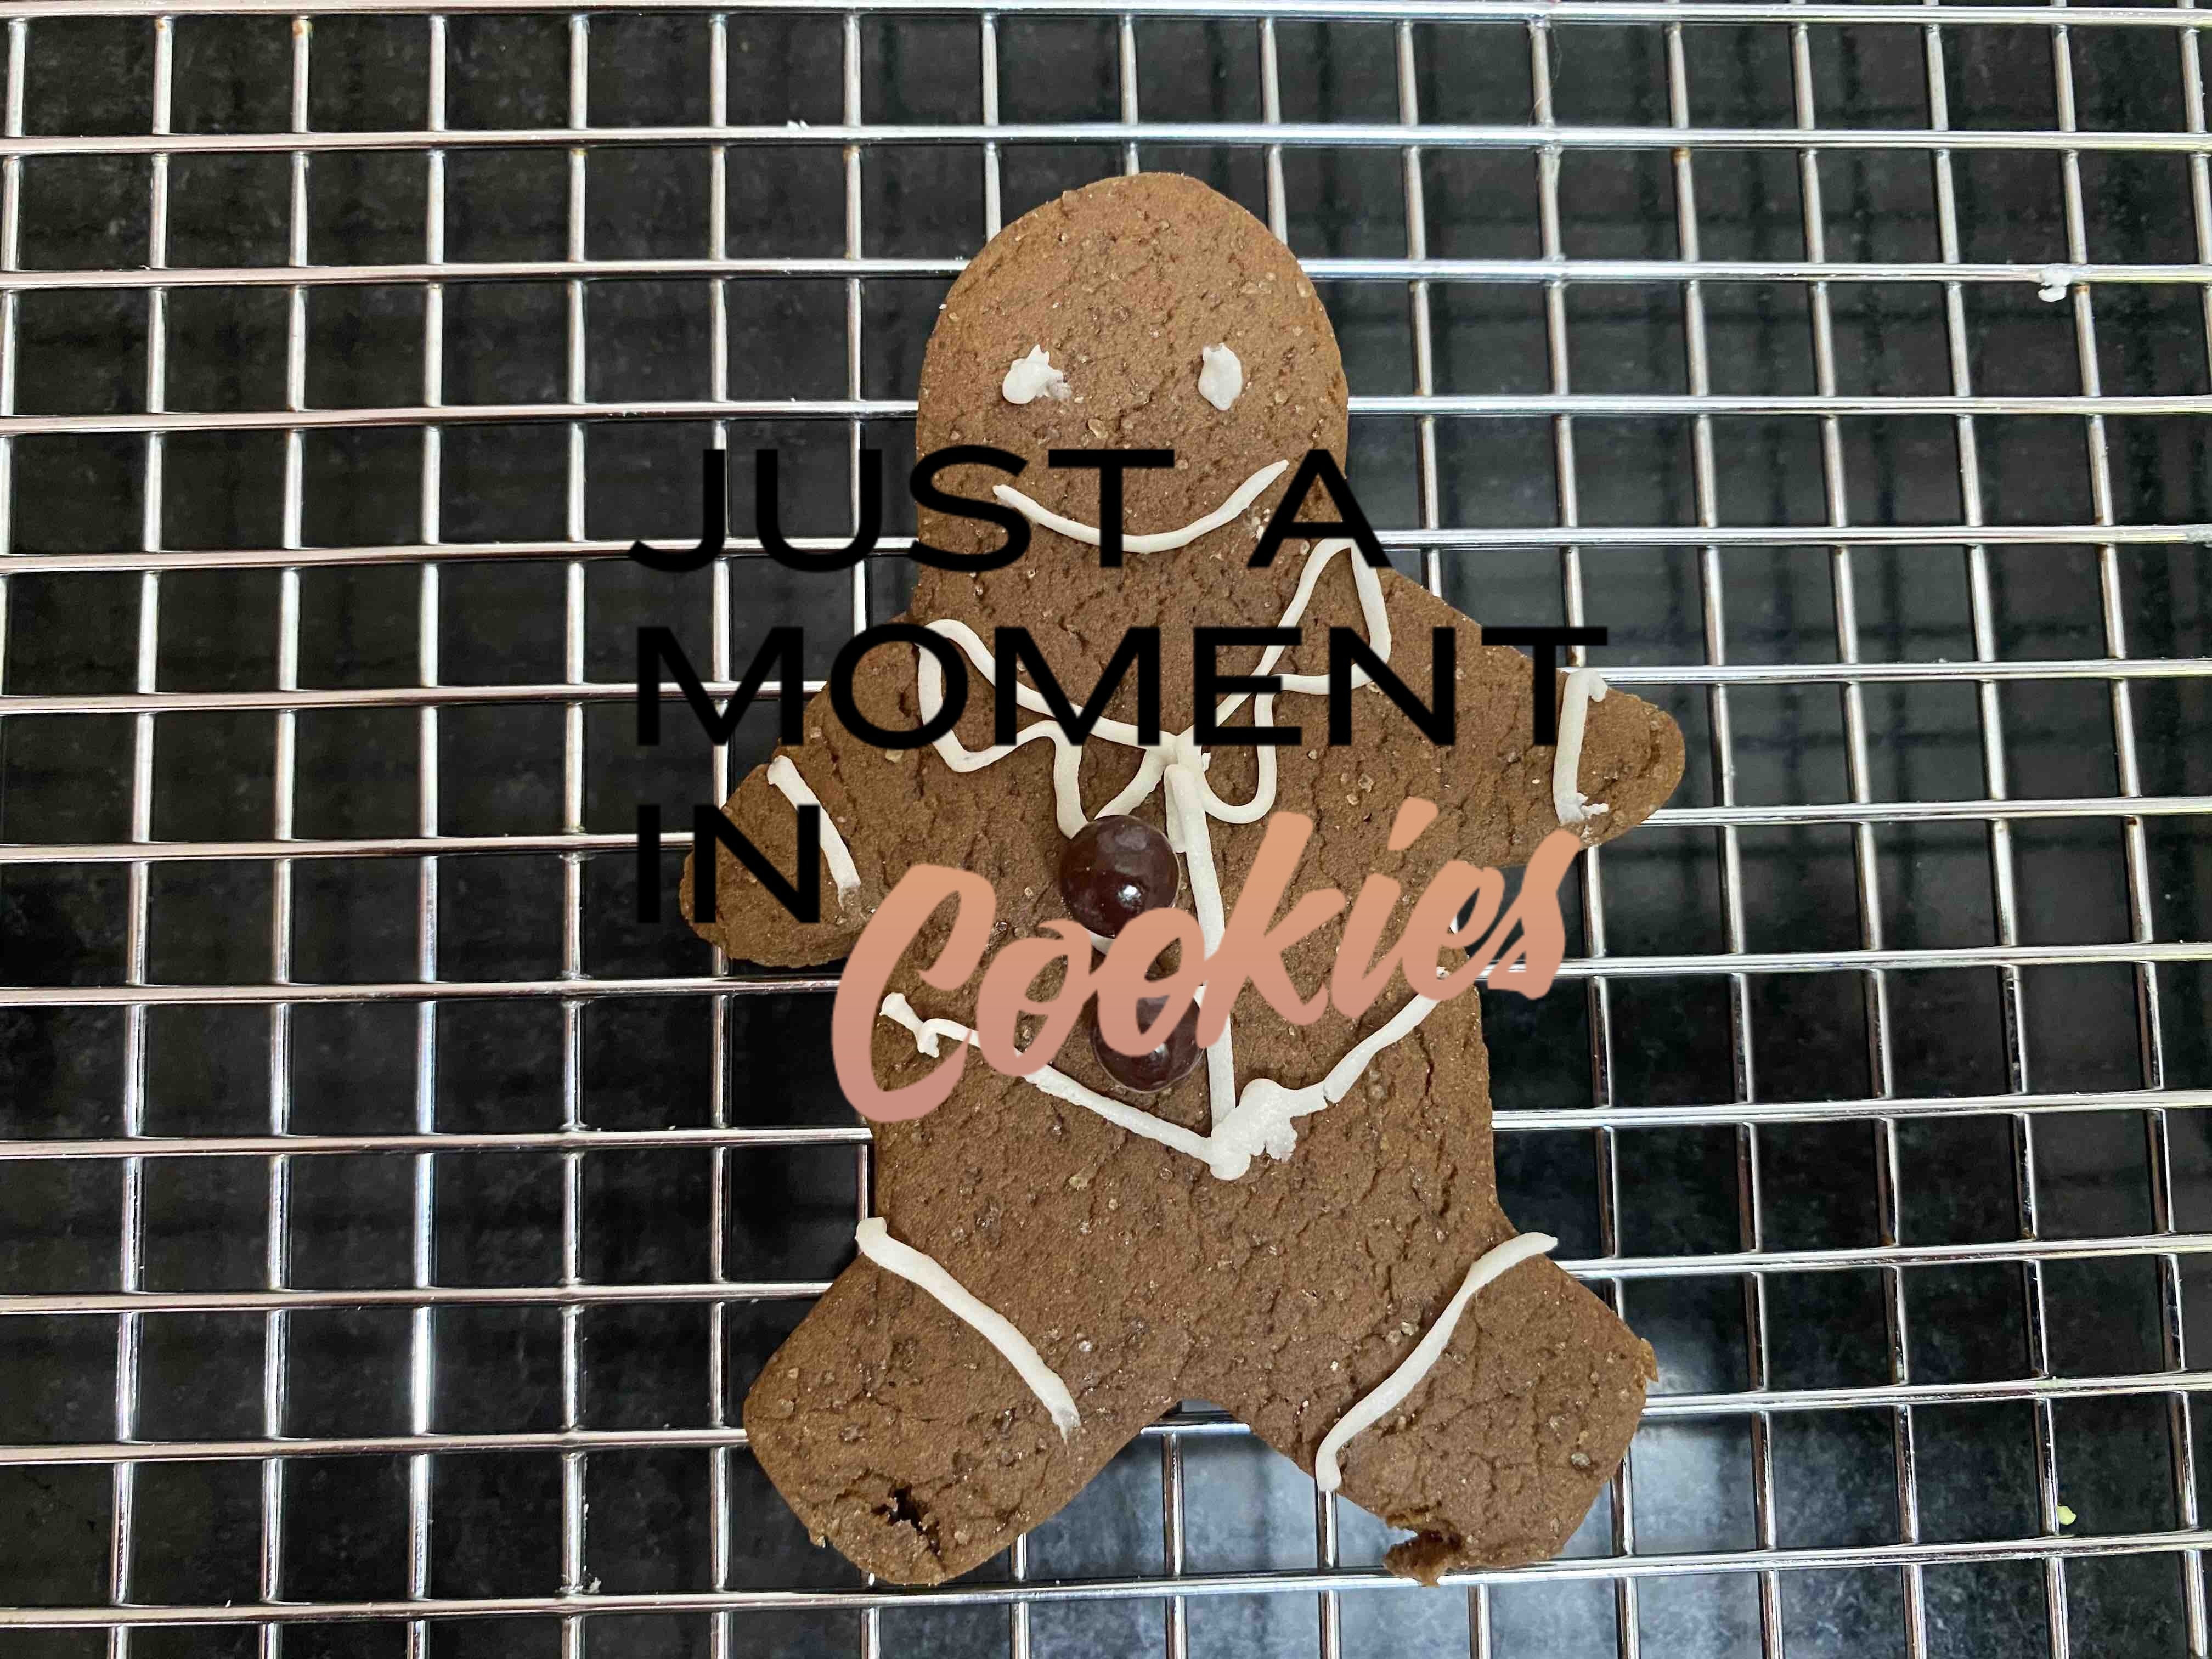 Gingerbread man cookie